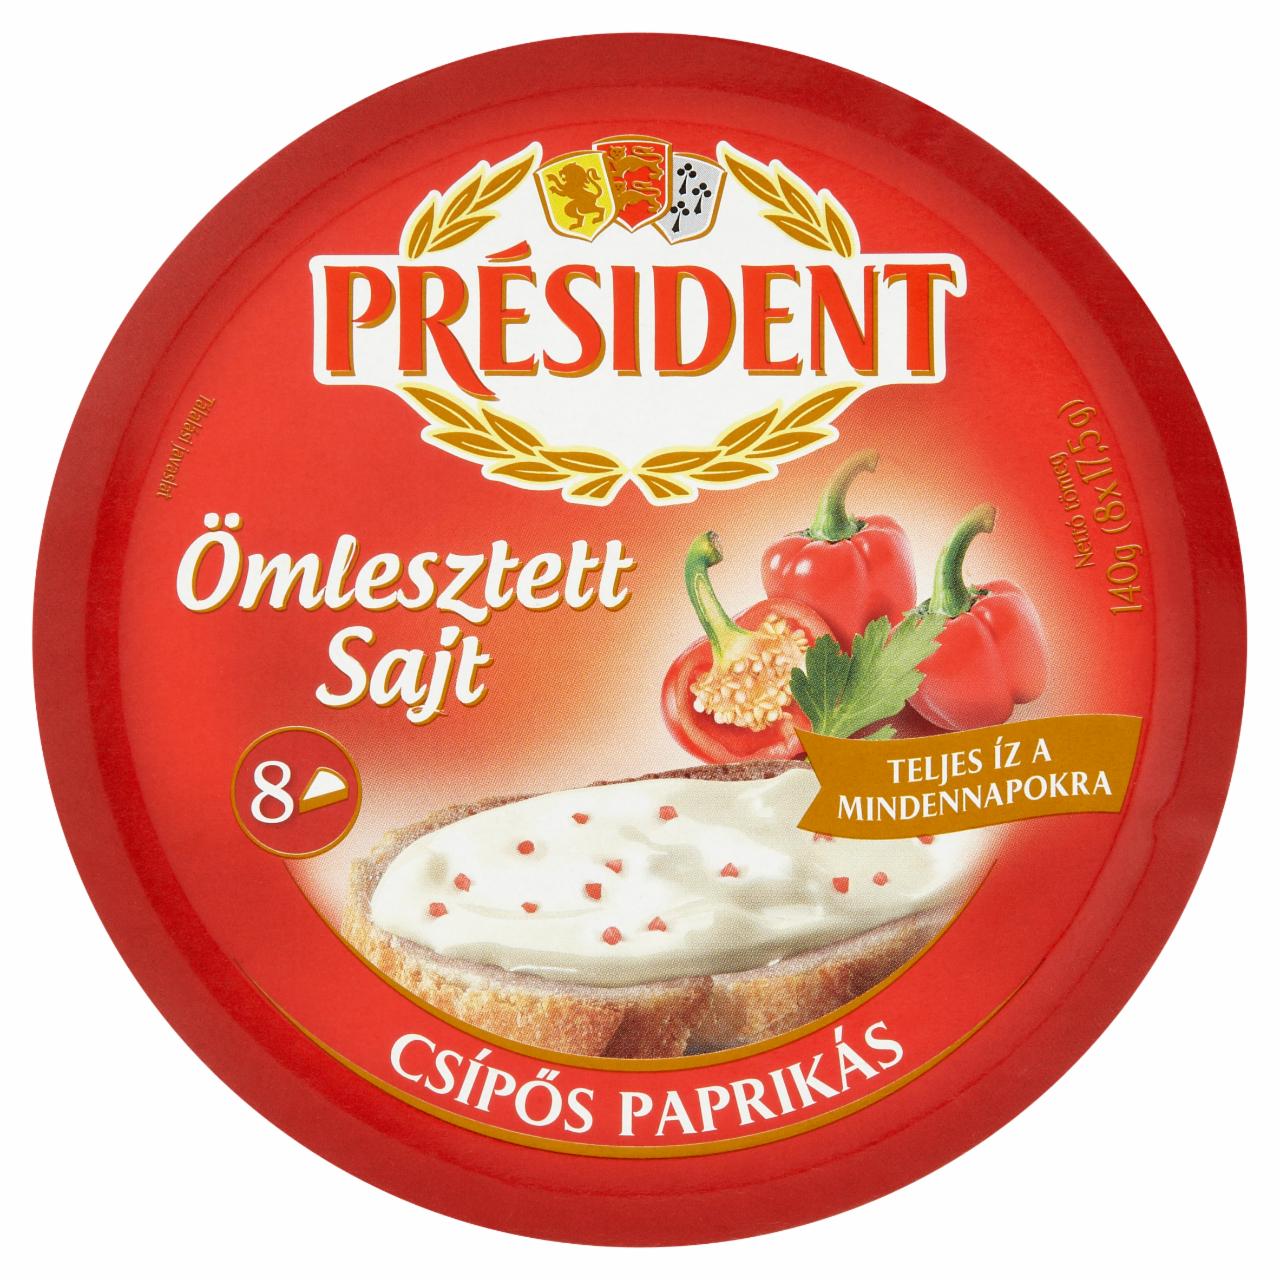 Képek - Président csípős paprikás ömlesztett sajt 8 x 17,5 g